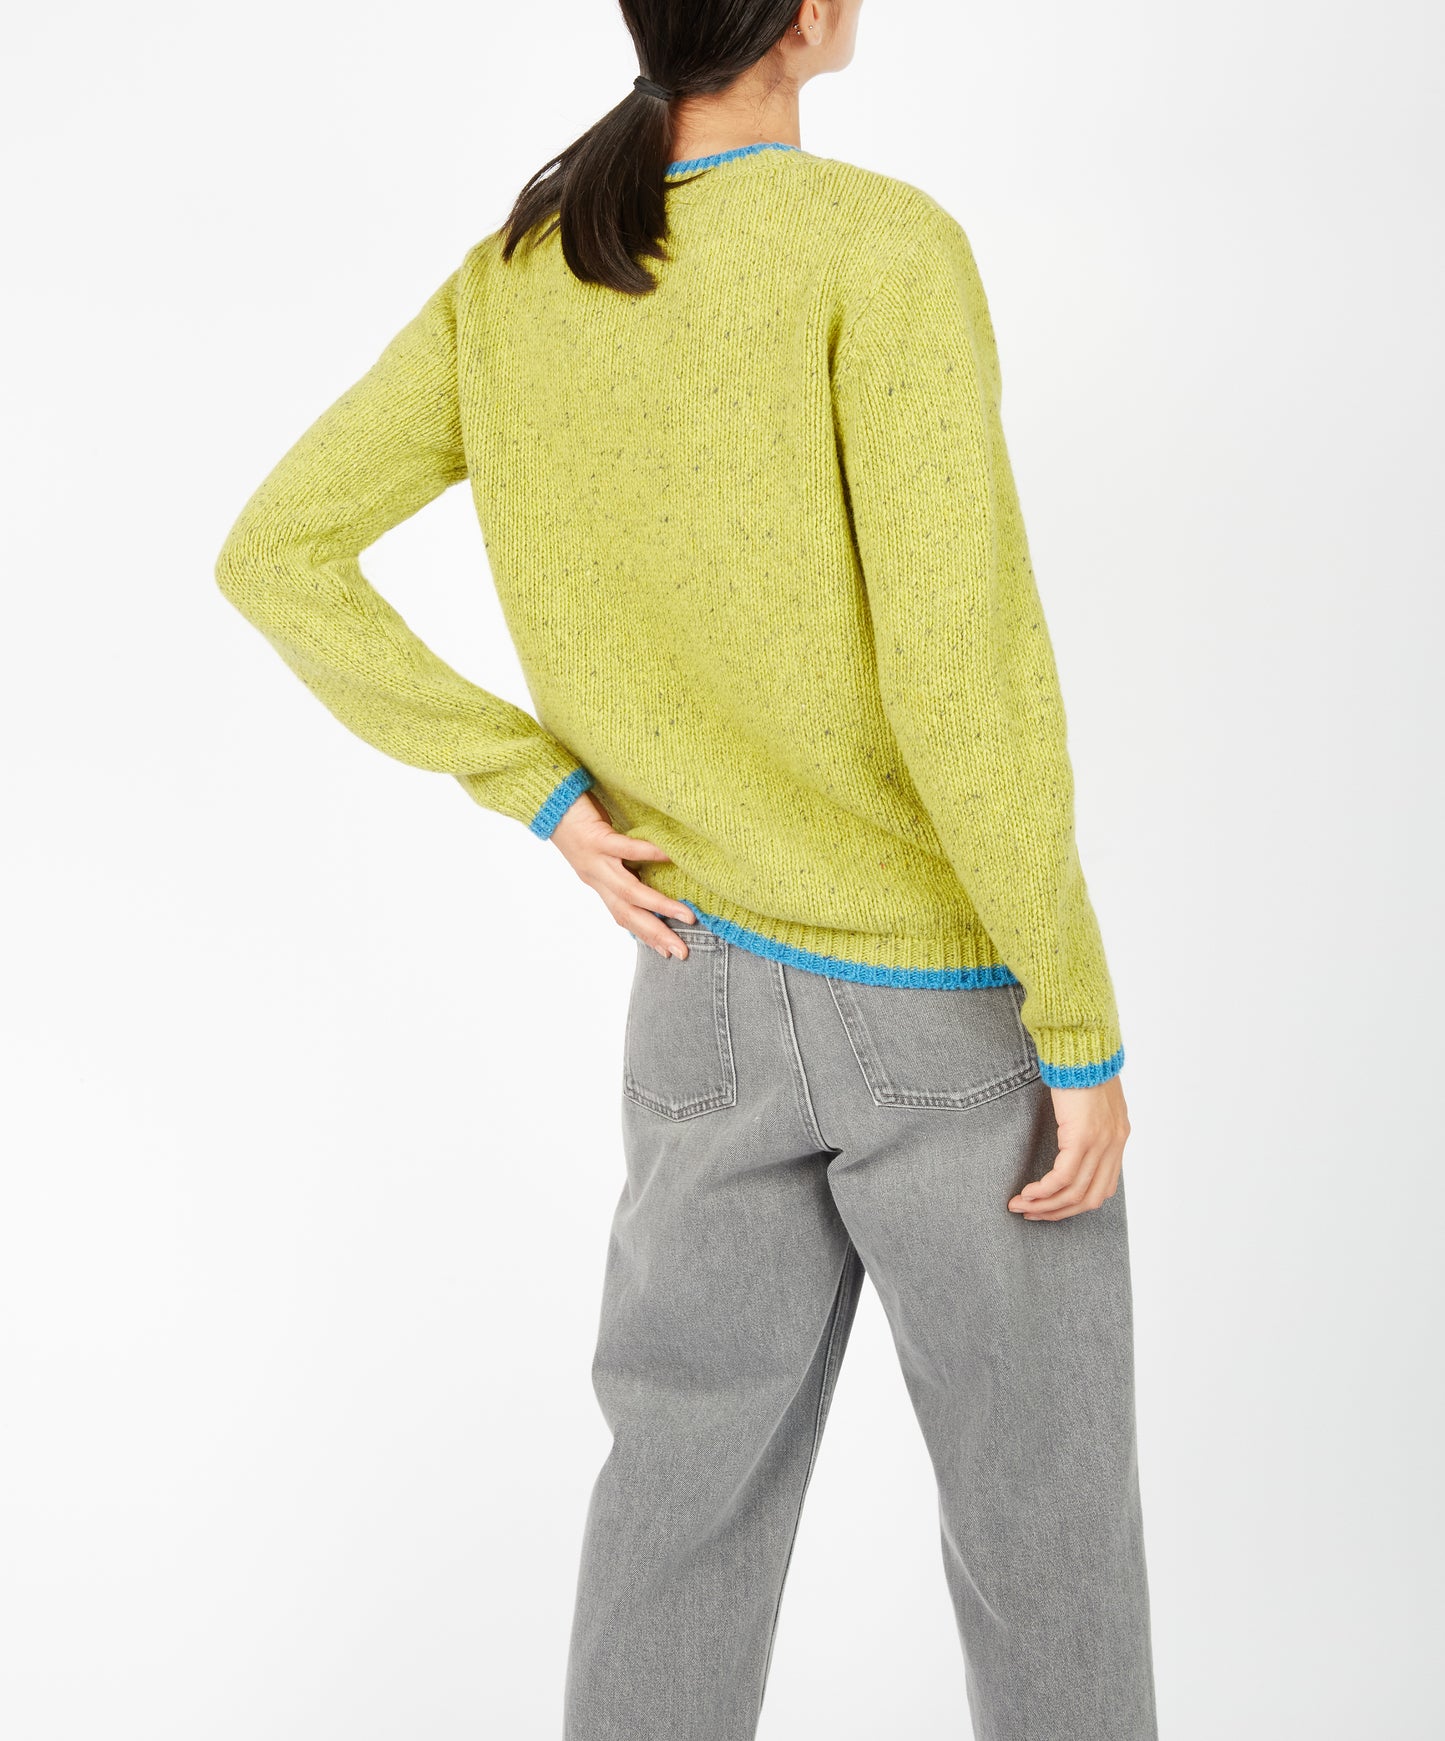 IrelandsEye Knitwear Slaney Crew Neck Sweater Chartreuse